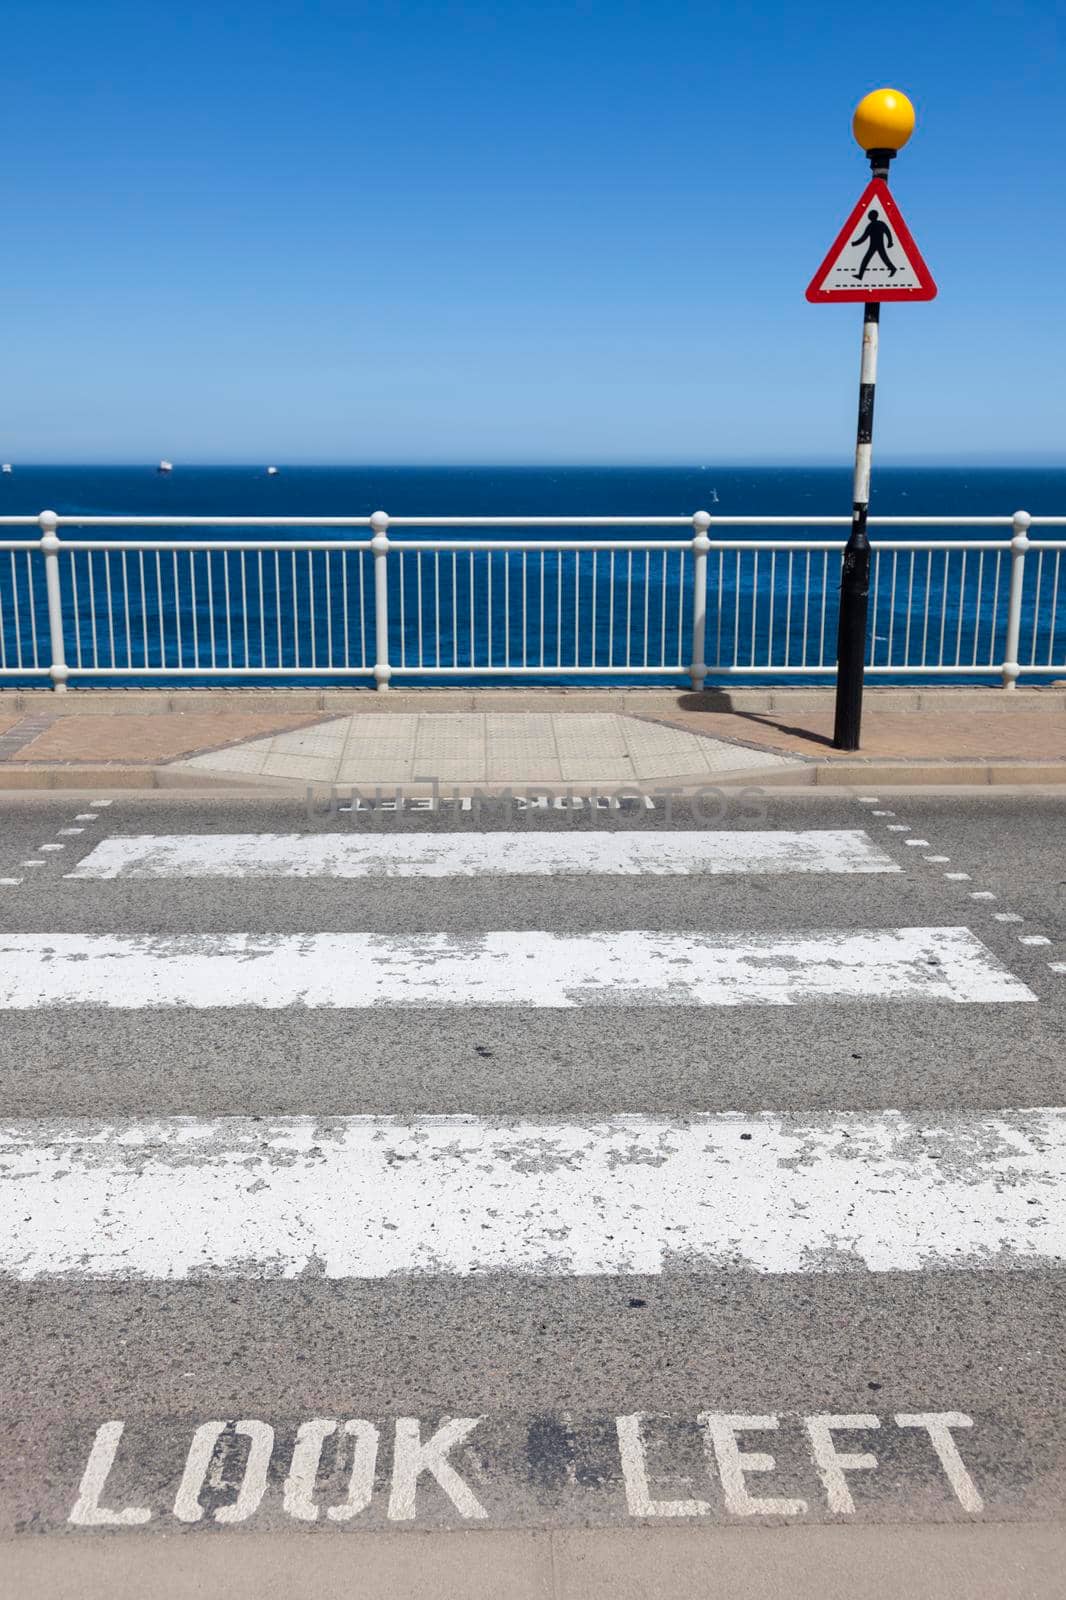 Look left - street crossing seen in Gibraltar 